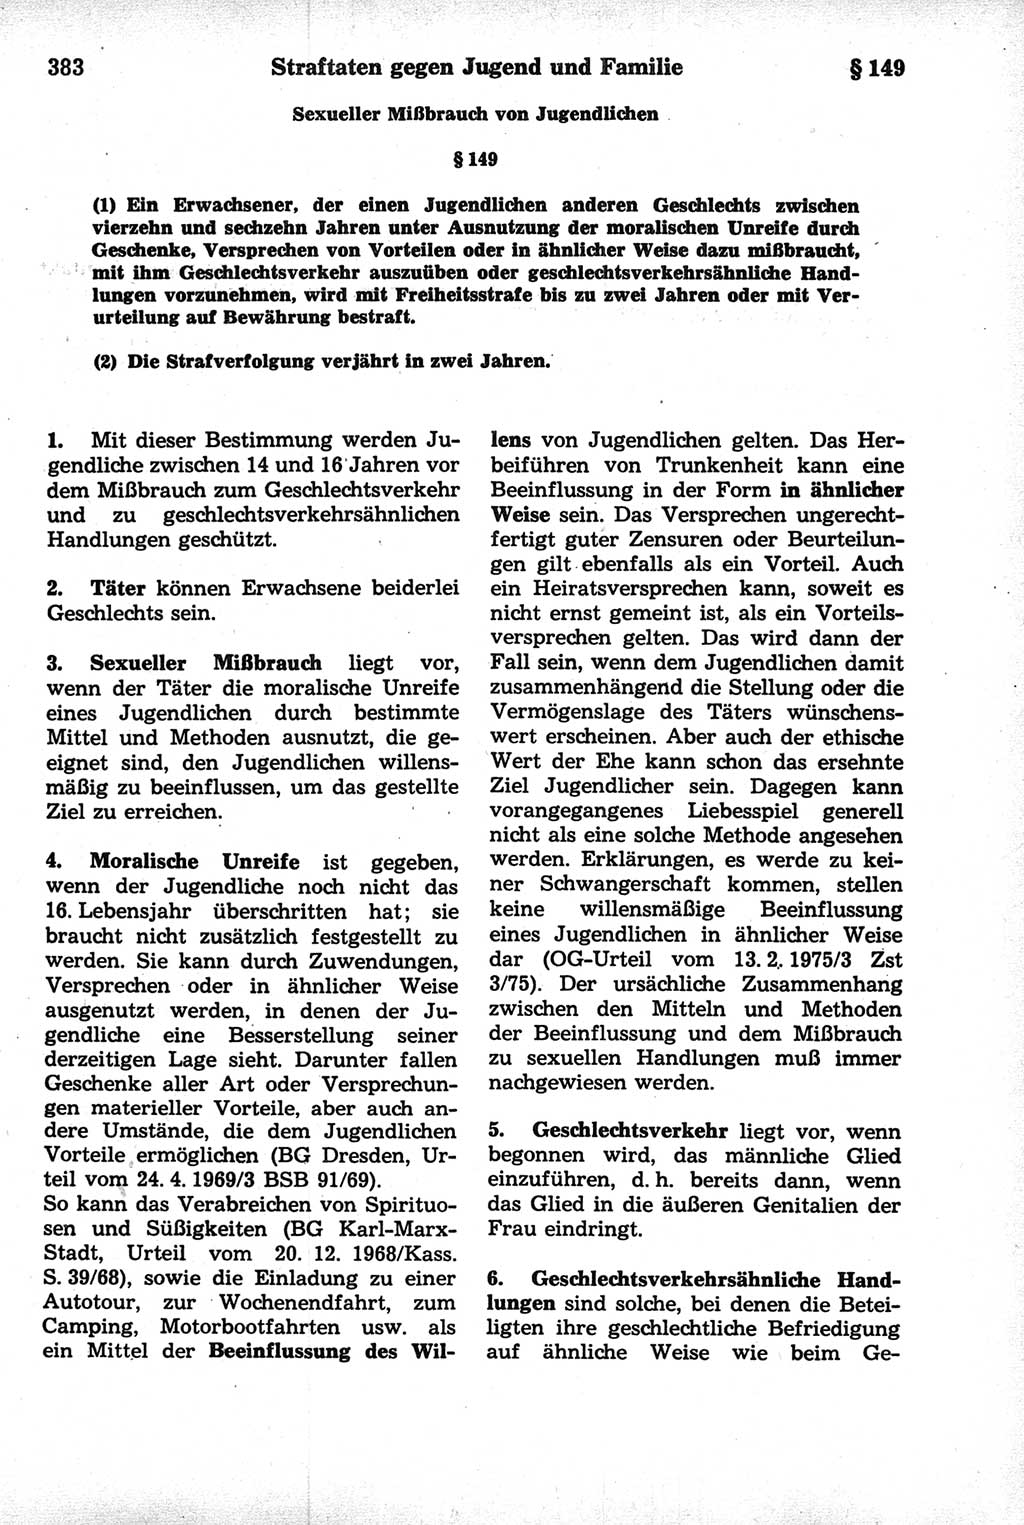 Strafrecht der Deutschen Demokratischen Republik (DDR), Kommentar zum Strafgesetzbuch (StGB) 1981, Seite 383 (Strafr. DDR Komm. StGB 1981, S. 383)